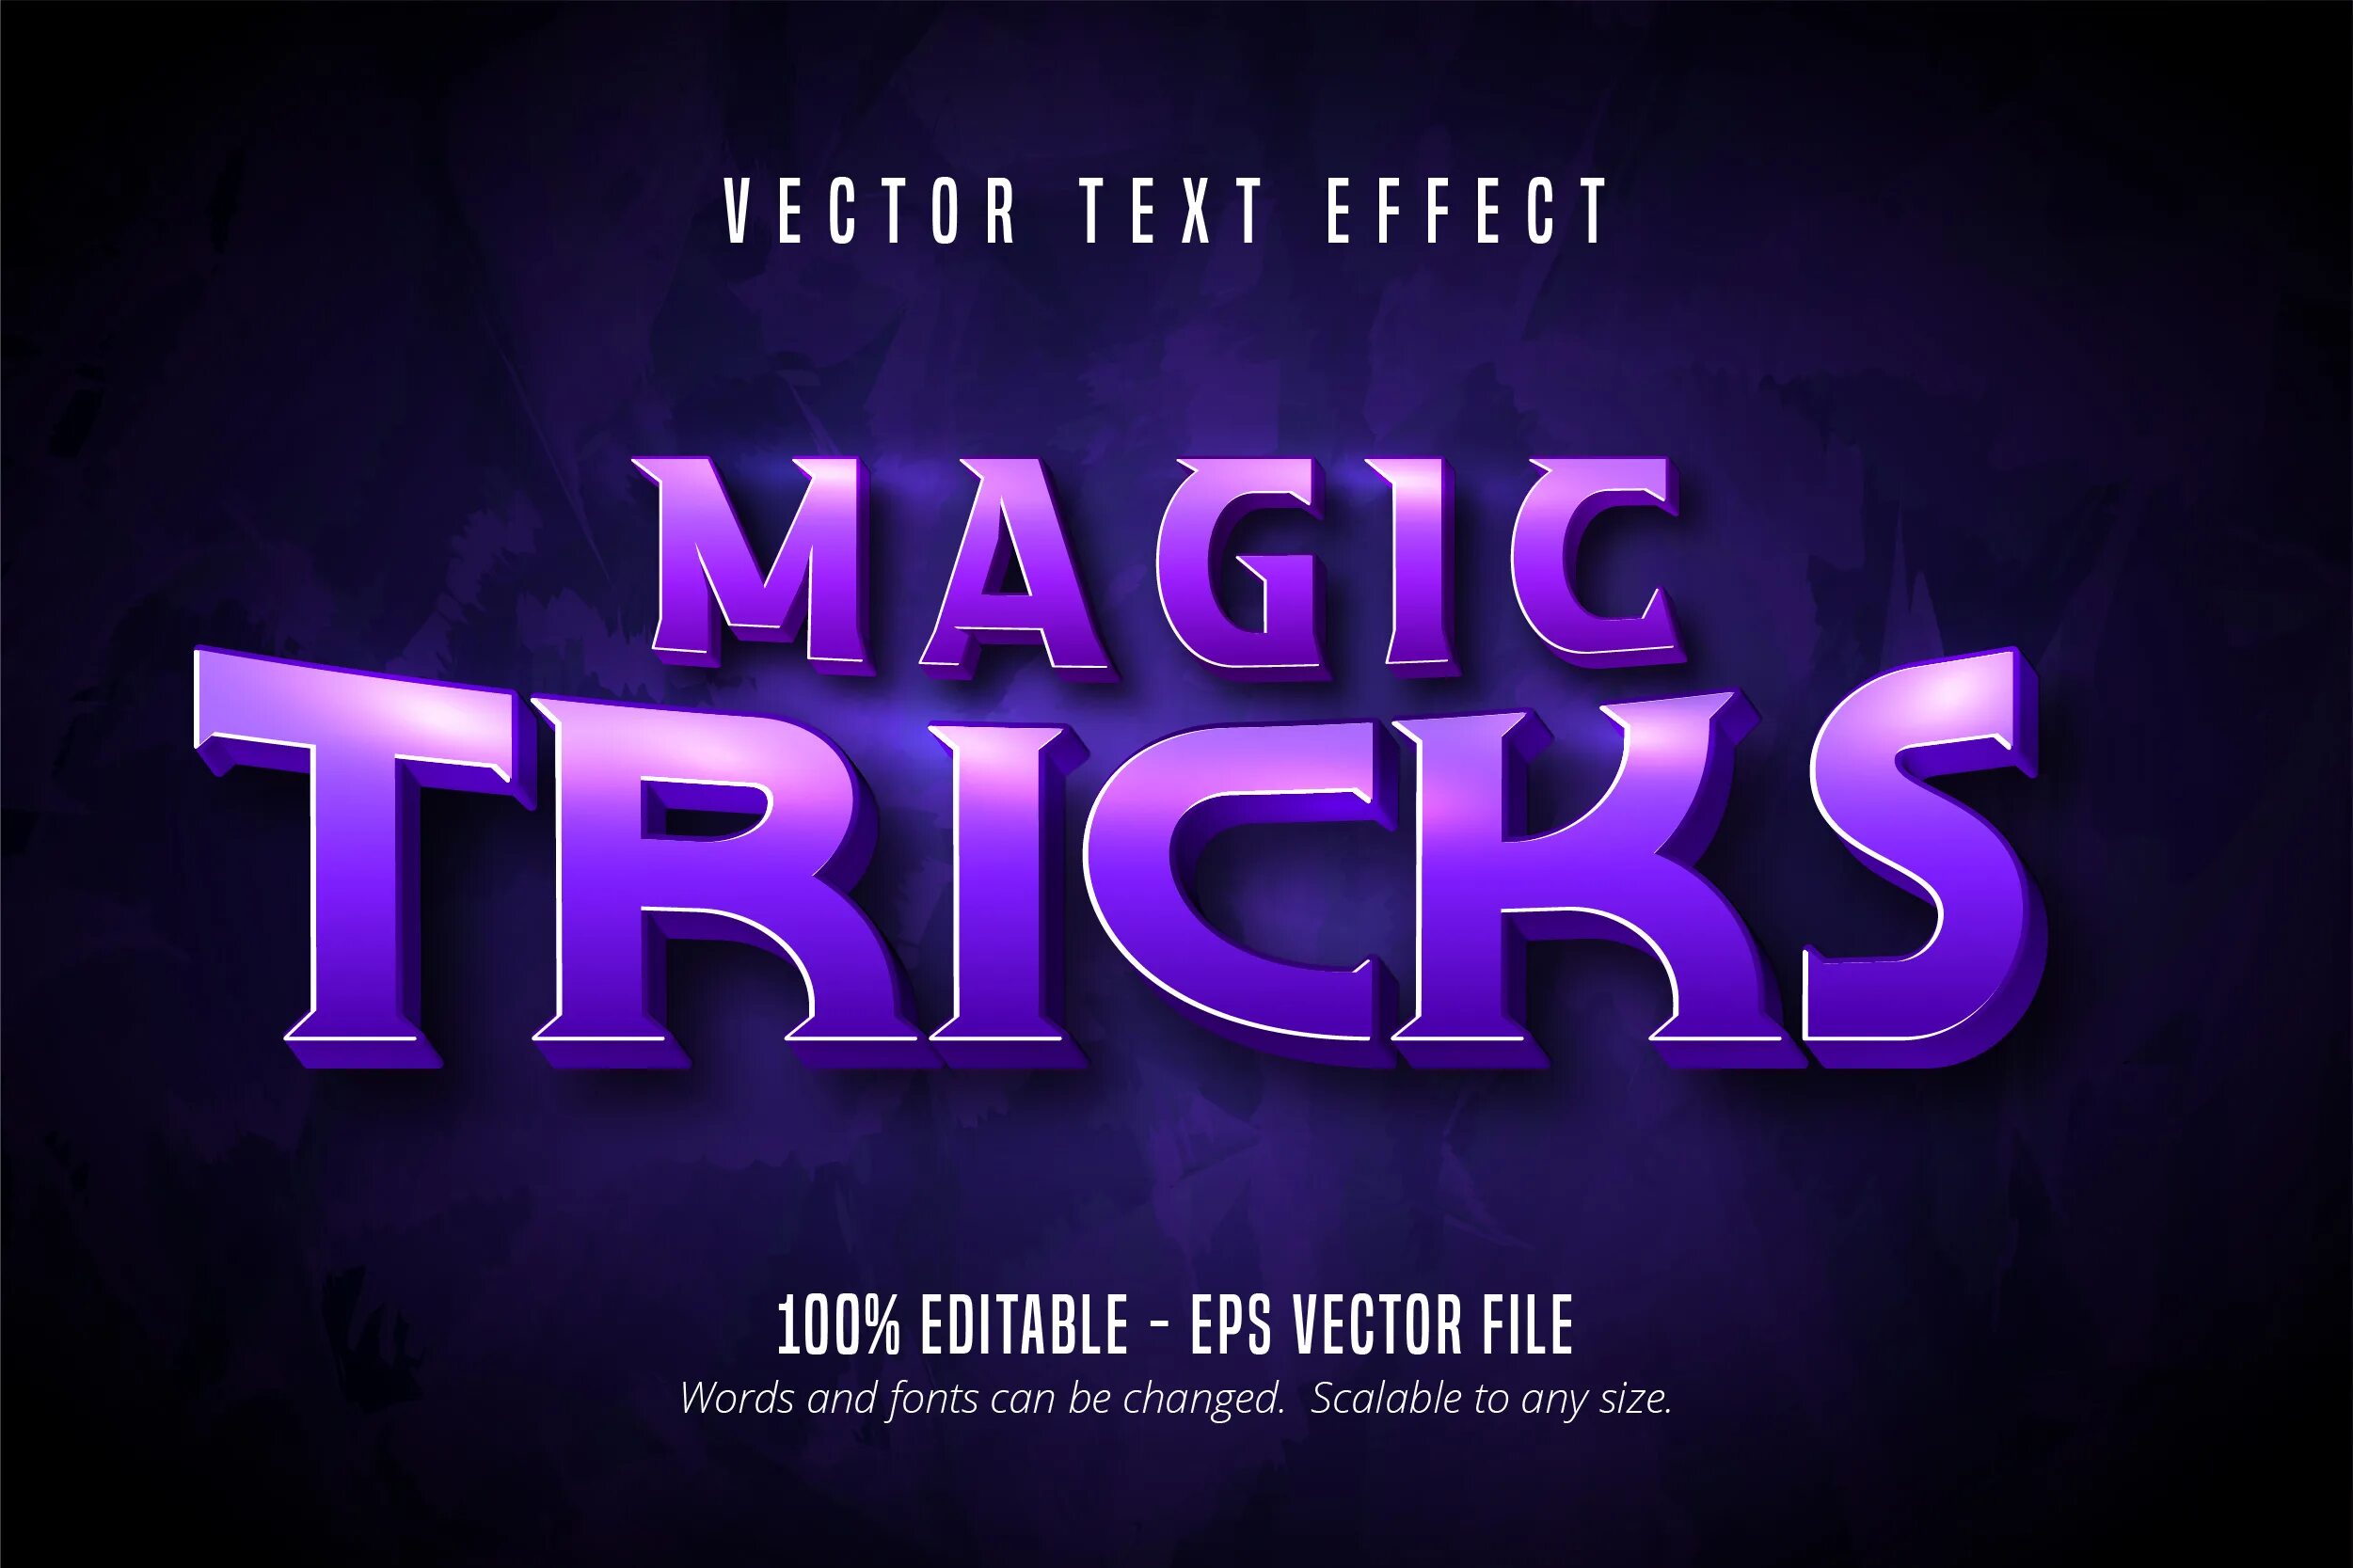 New magic текст. Magic слово. Magic text Effect. Magic text vector. Магический текст.